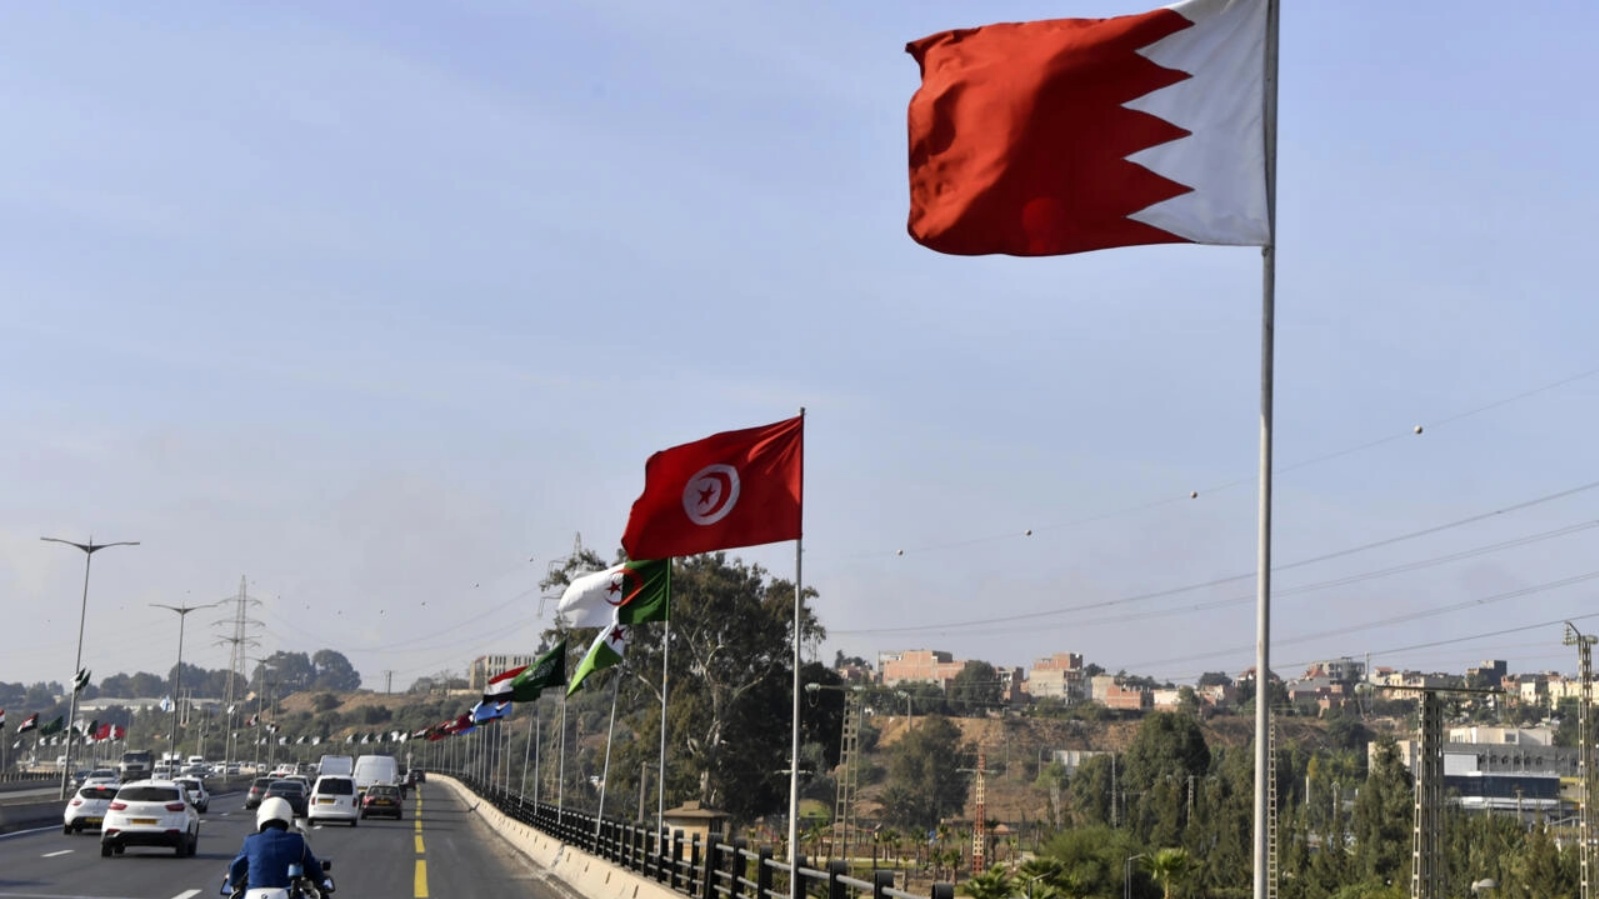 أعلام الدول العربية الأعضاء في جامعة الدول العربية ترفرف على طول طريق سريع في 29 أكتوبر 2022 في العاصمة الجزائرية التي تسضيف قمة عربية قريباً